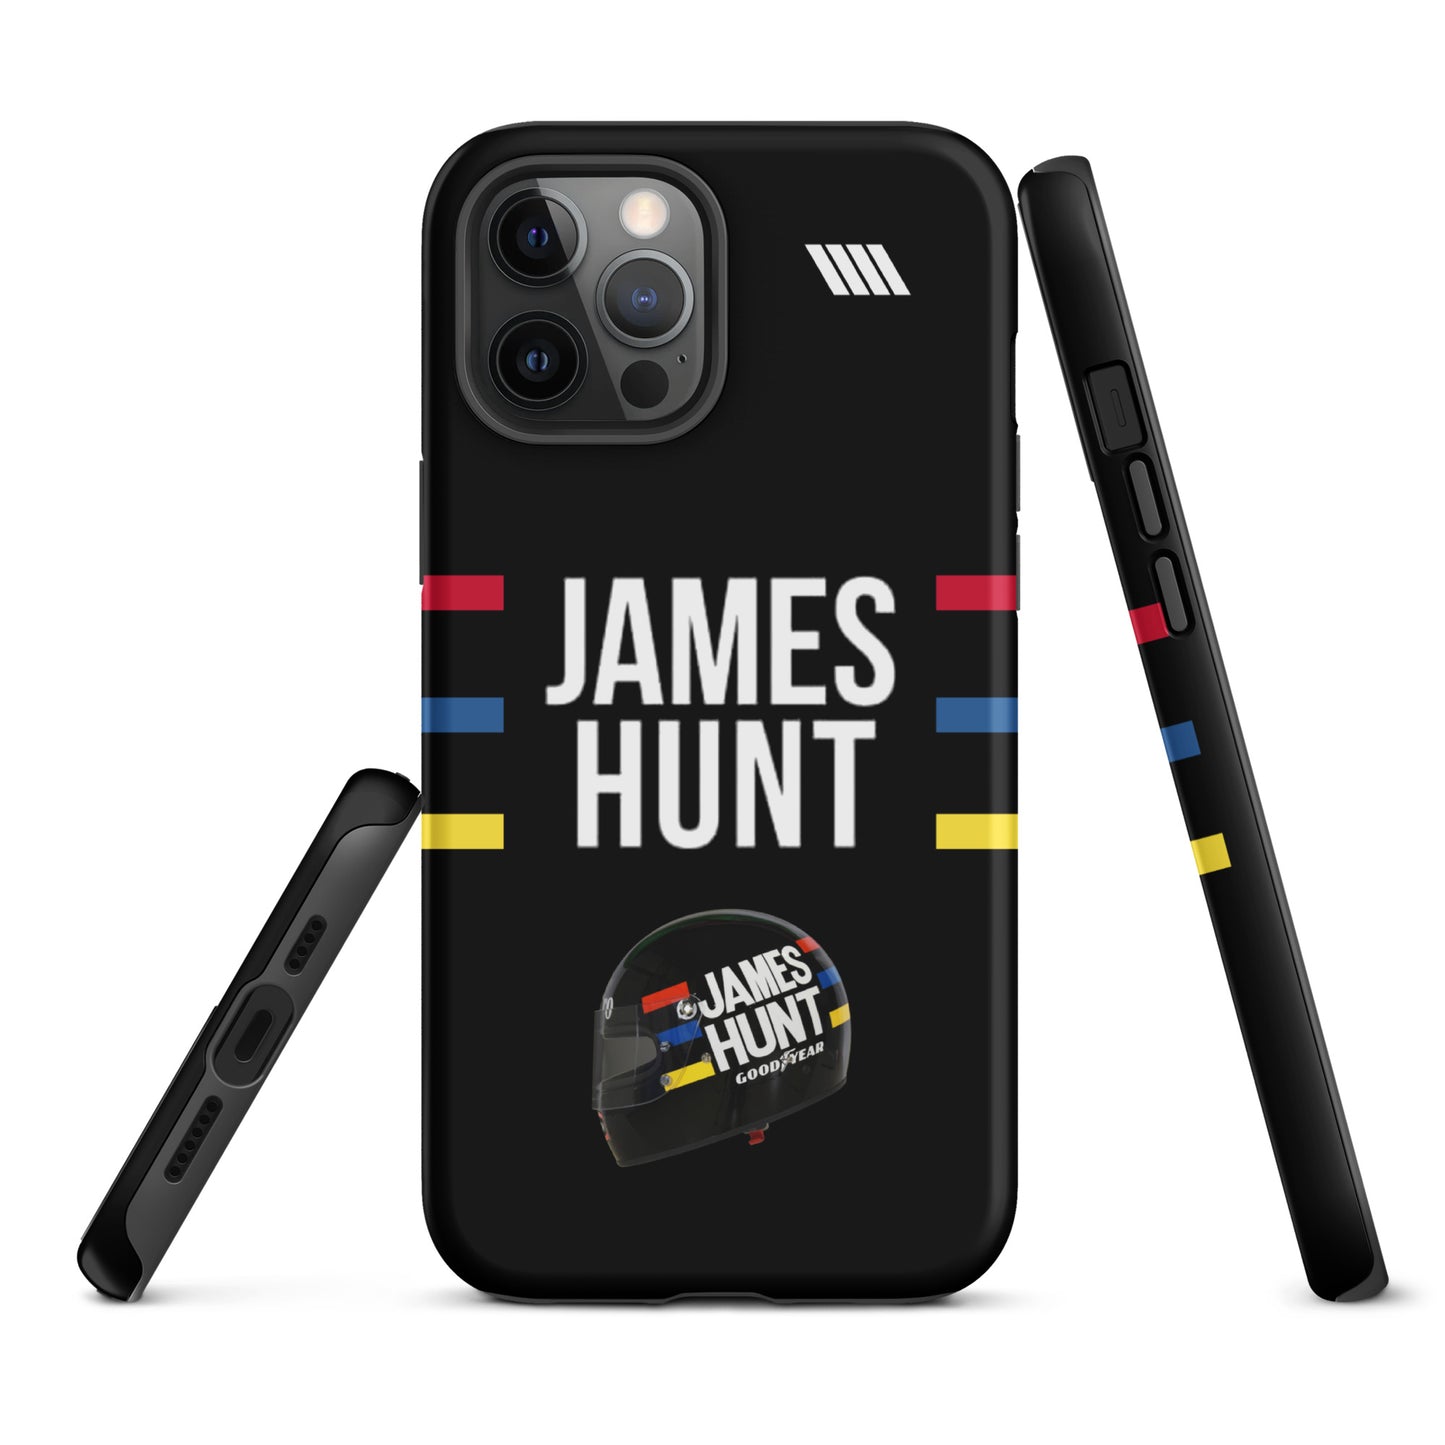 James Hunt Tough iPhone Case